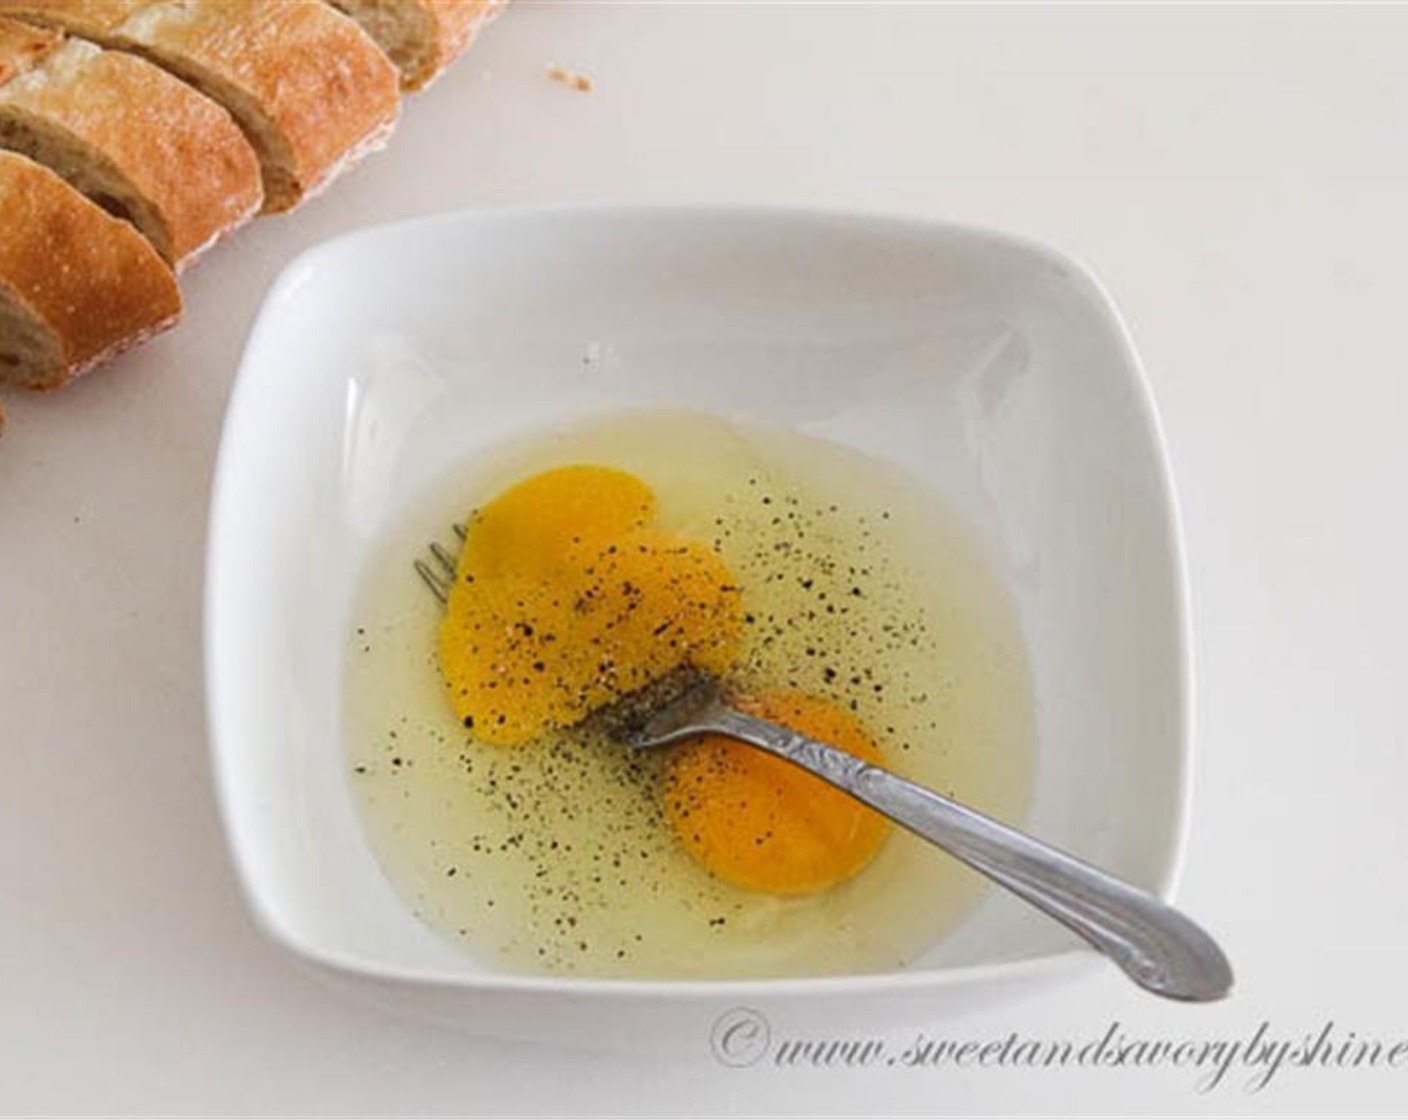 Schritt 2 In einer mittelgroßen Schüssel Eier (4) mit einer Gabel verquirlen. Dann mit Salz (wenig) und Pfeffer (wenig) würzen.